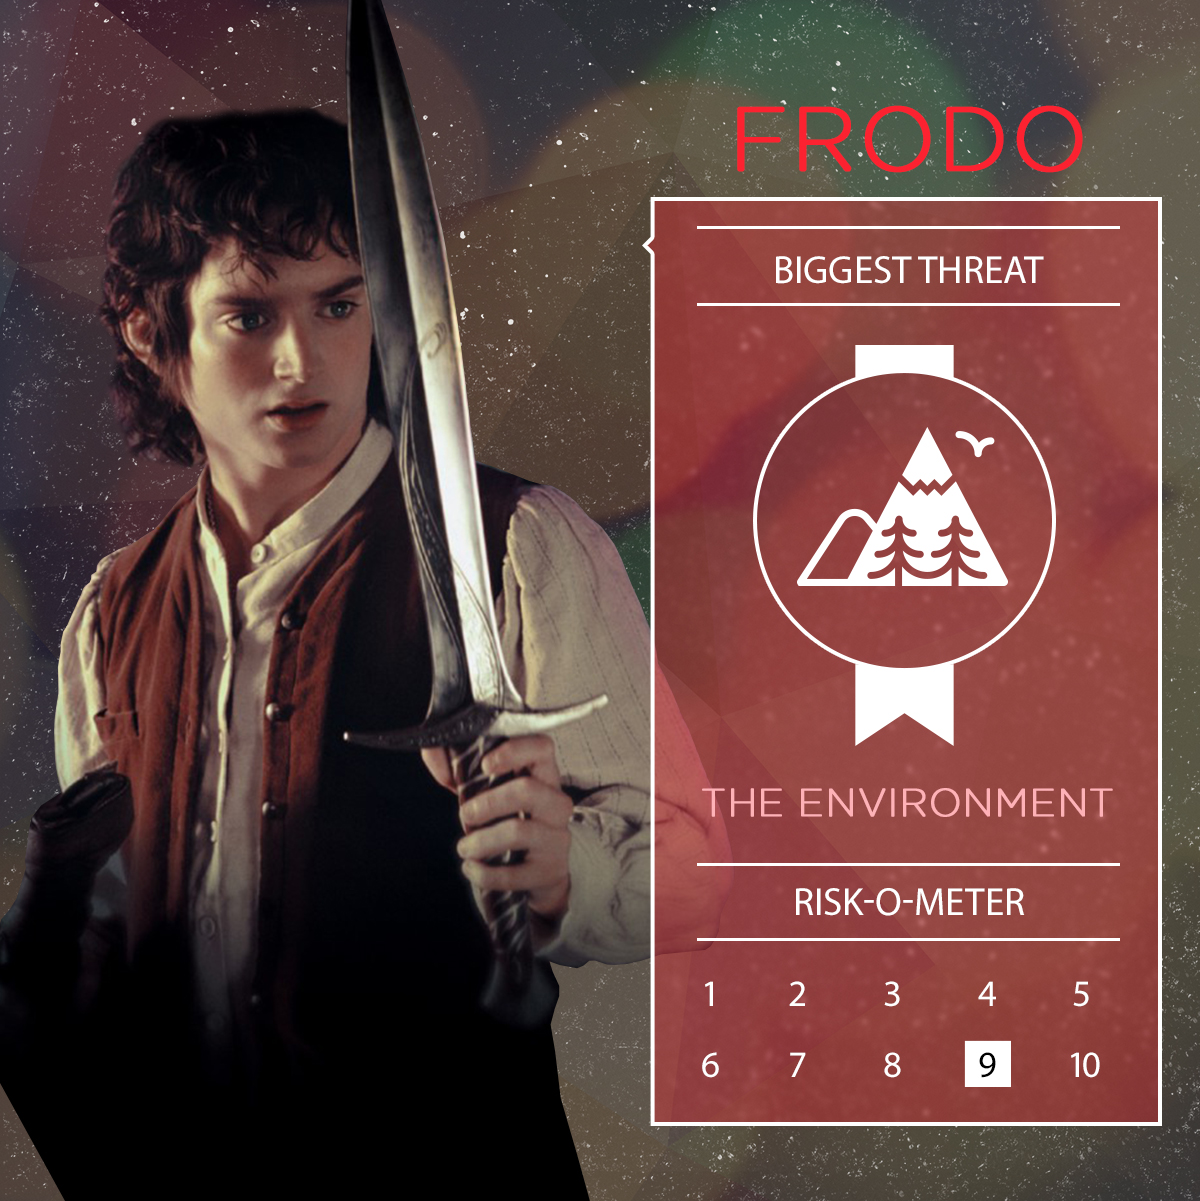 Frodo - Life Insurance